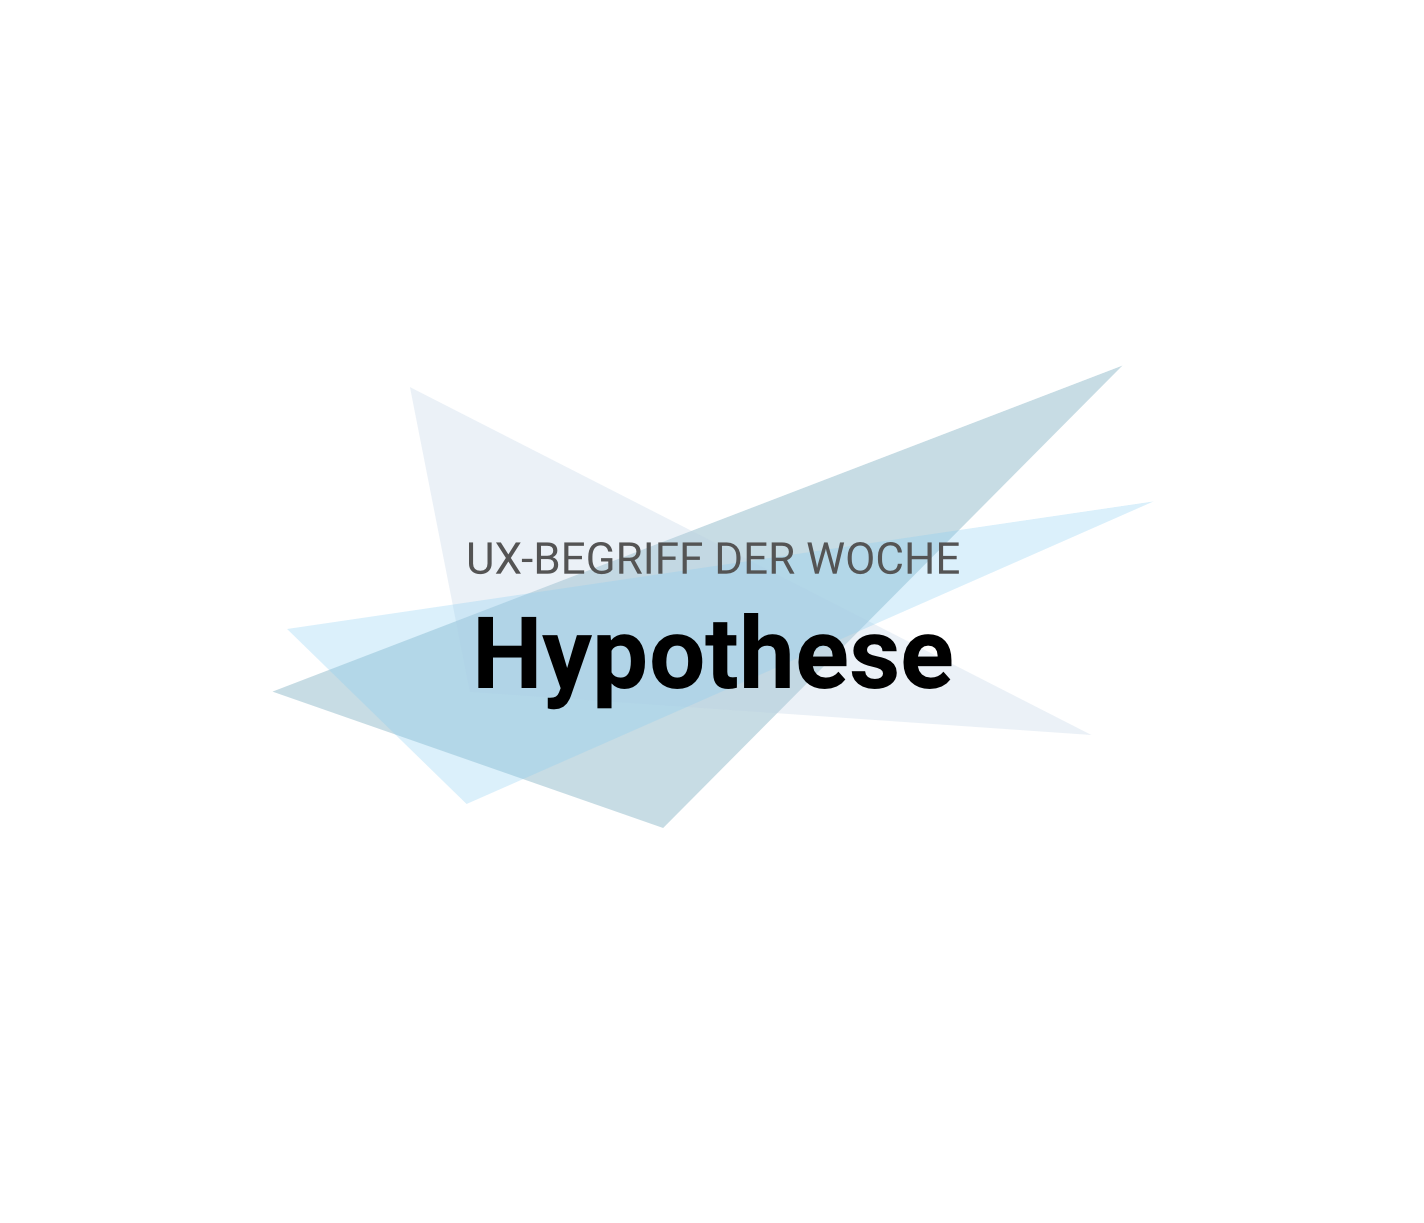 UX-Begriffe kurz erklärt: "Hypothese"